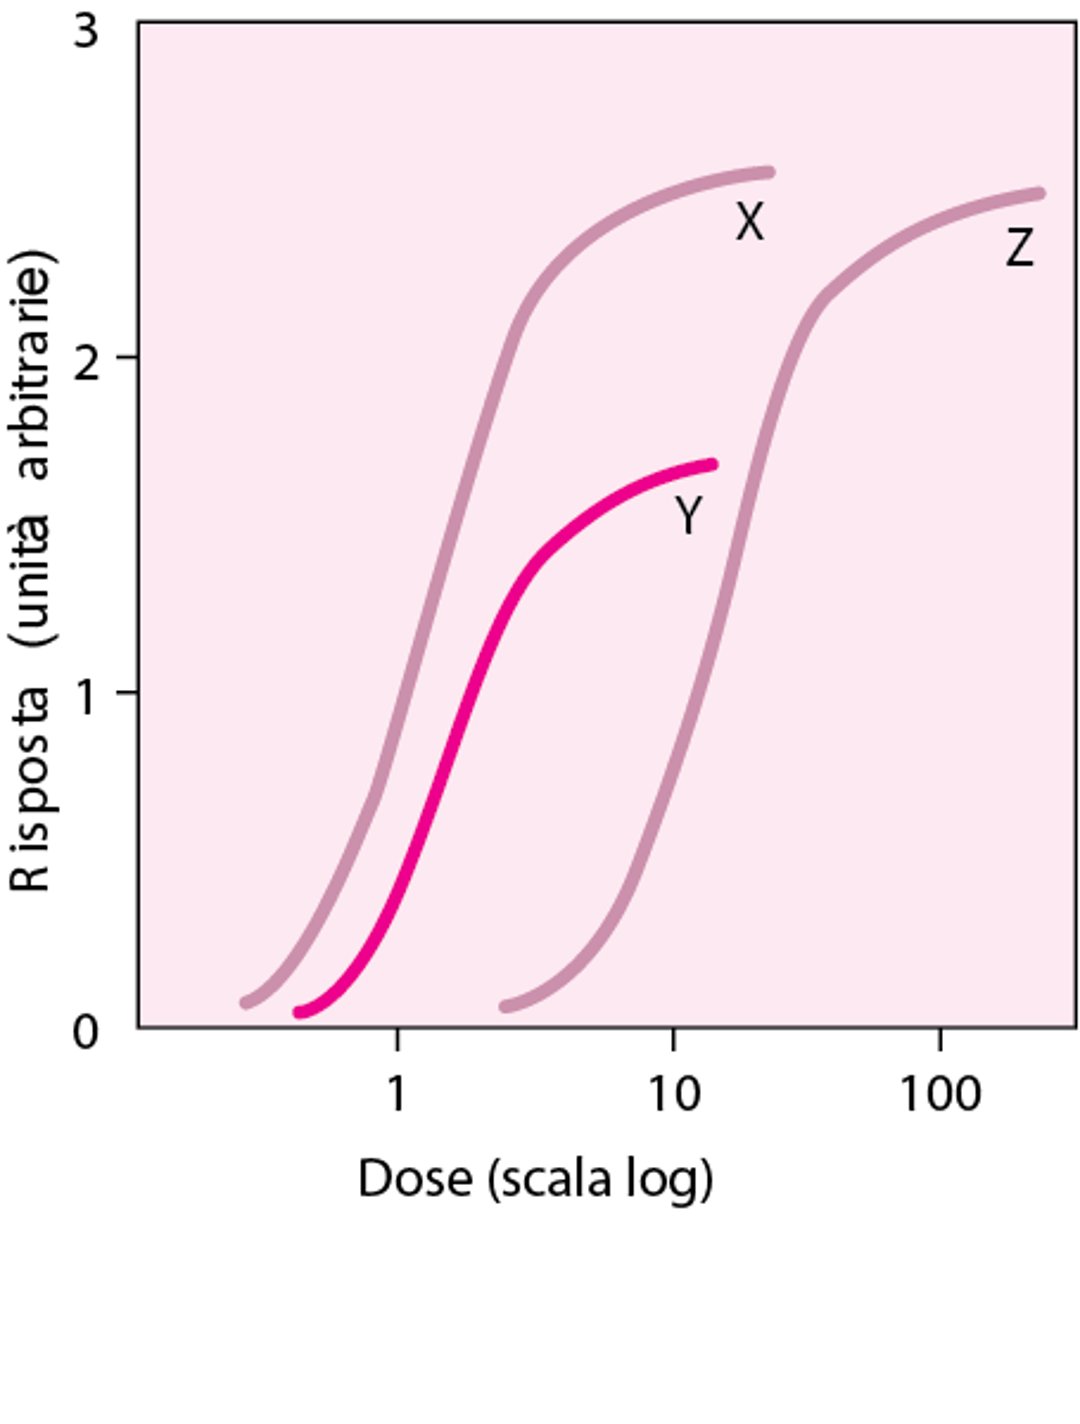 Confronto delle curve dose-risposta dei farmaci X, Y e Z